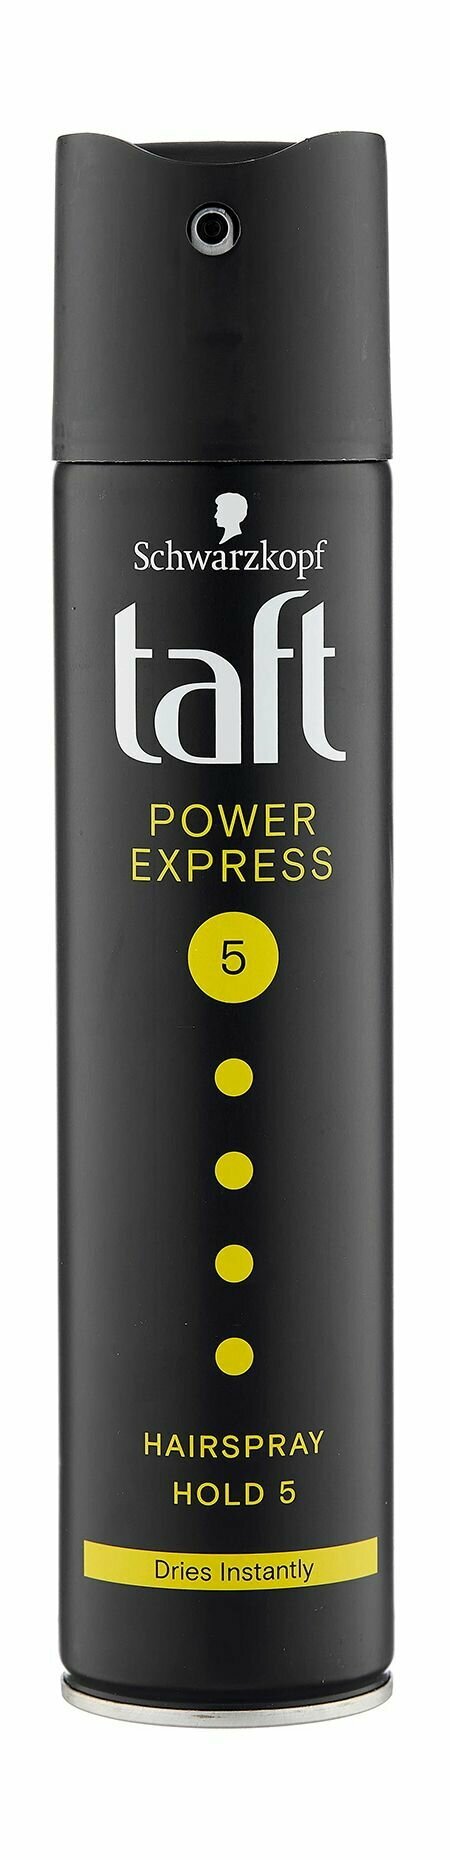 Лак для моментальной укладки волос с мегафиксацией / Schwarzkopf & Henkel Taft Power Express Hairspray Hold 5